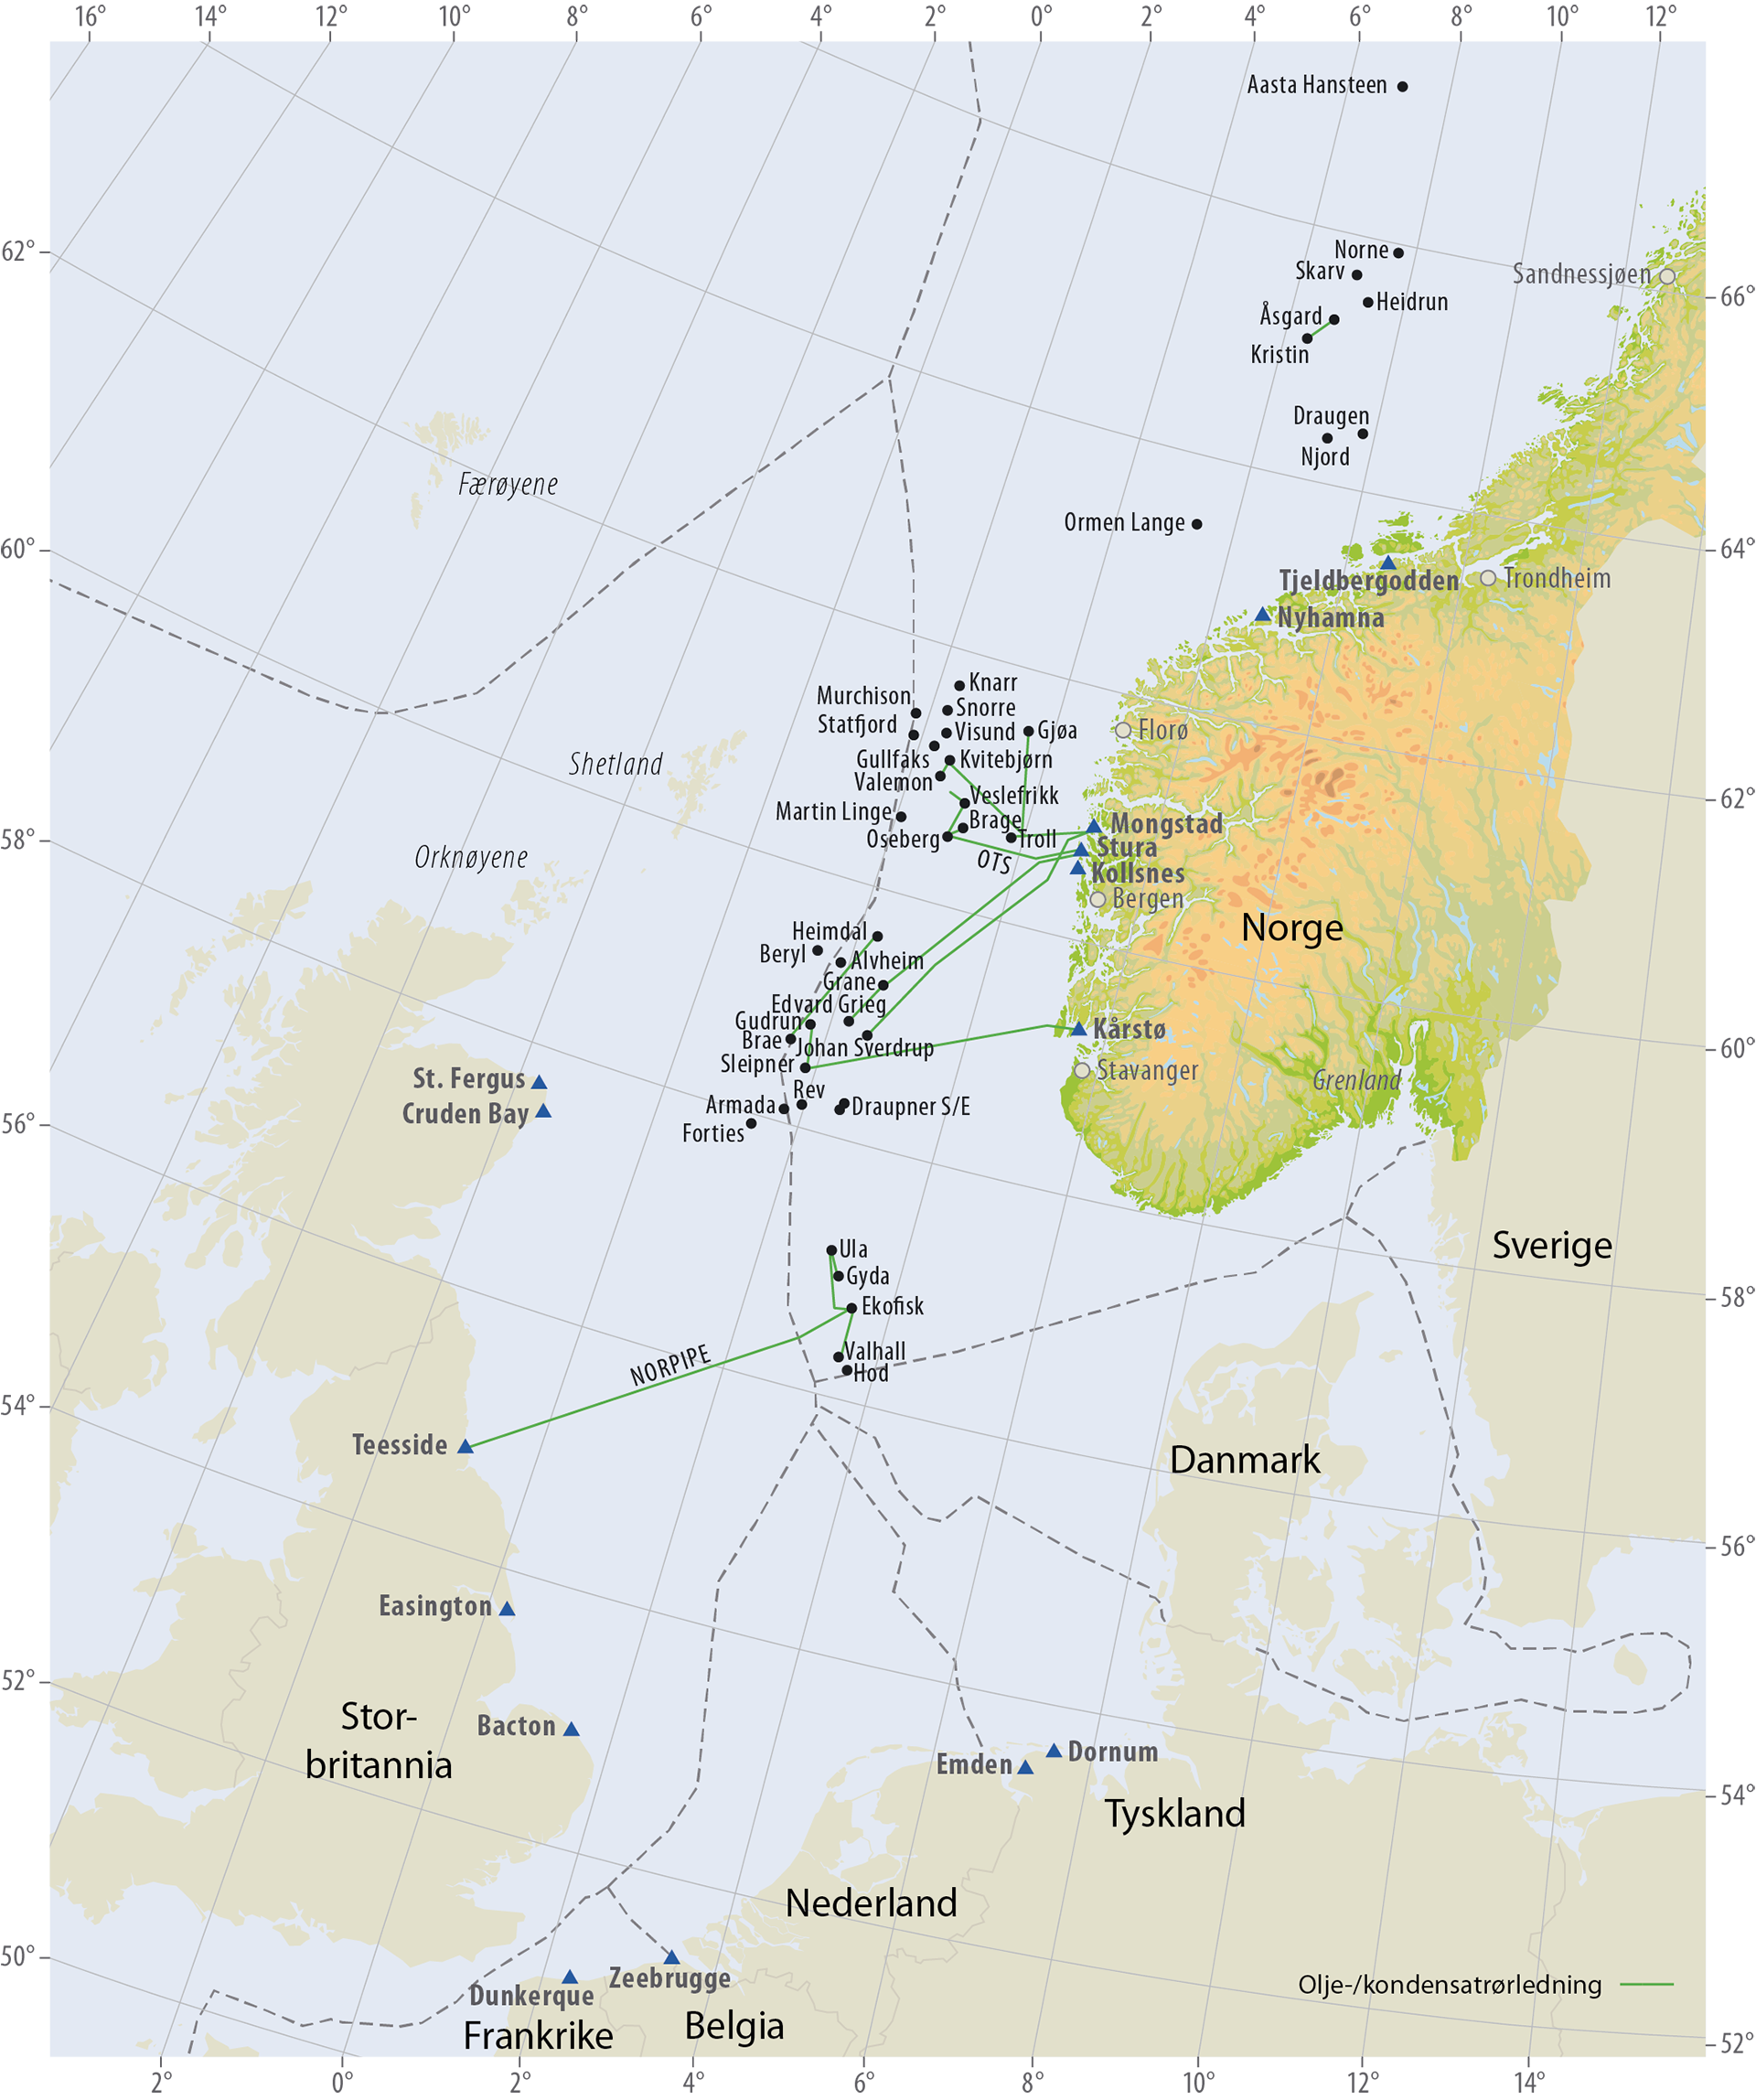 Oljerørledninger på norsk kontinentalsokkel